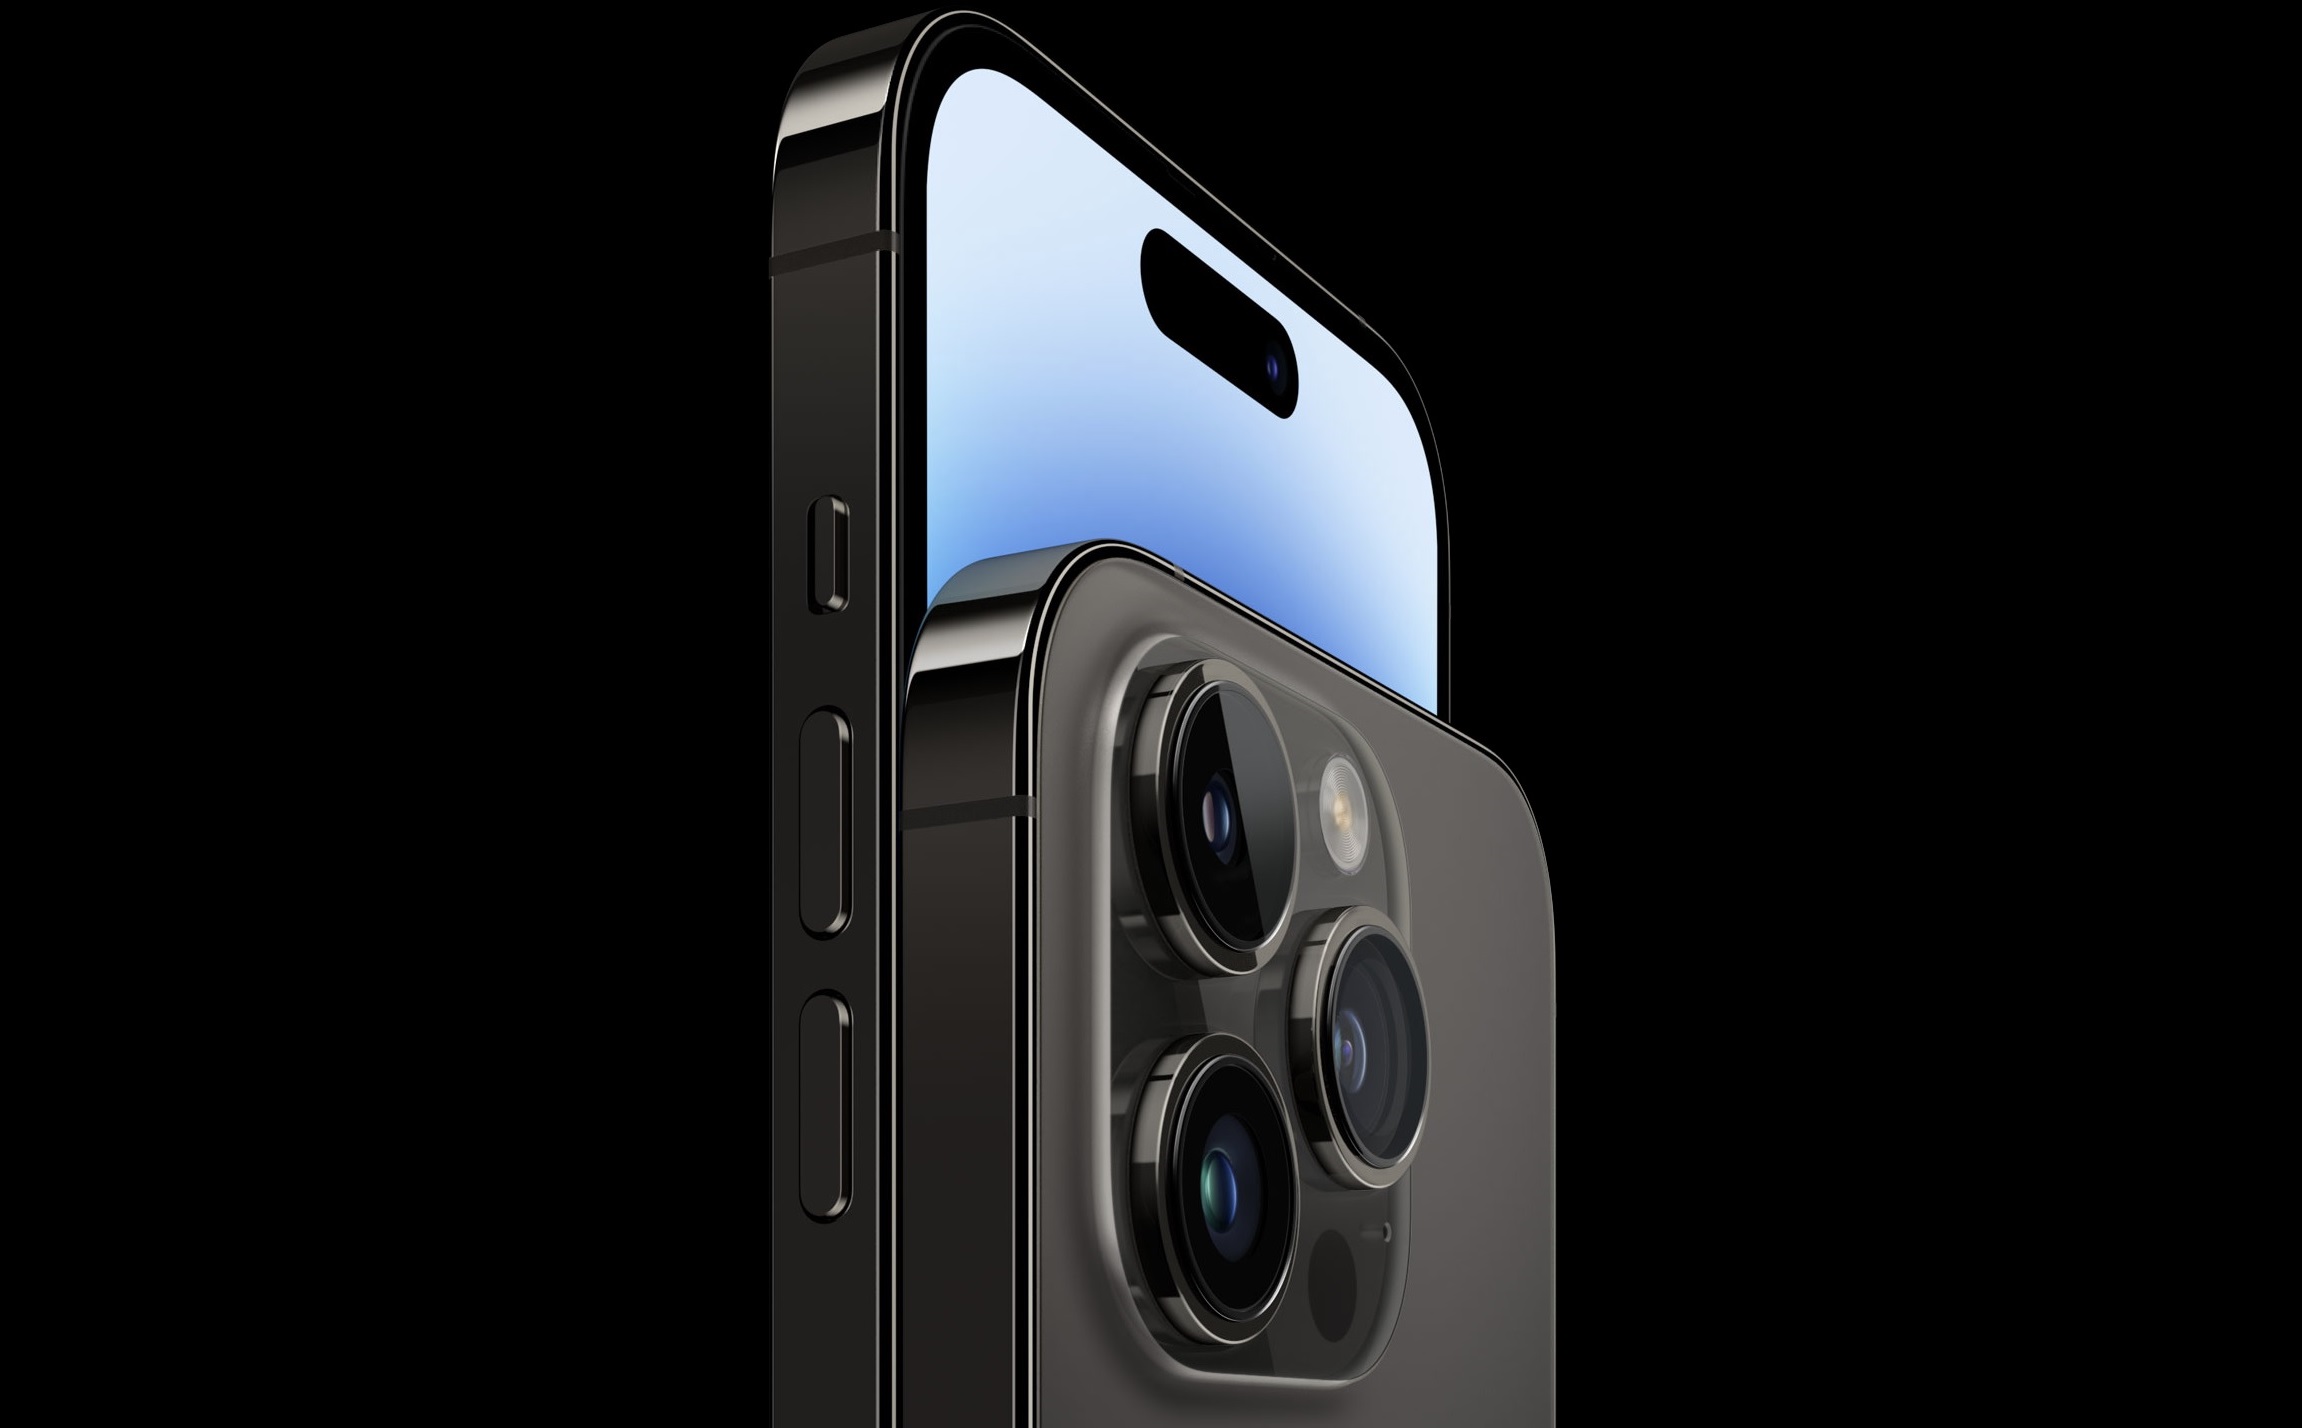 格安ショップ iPhone14Pro 2台 256GB Max フィルム